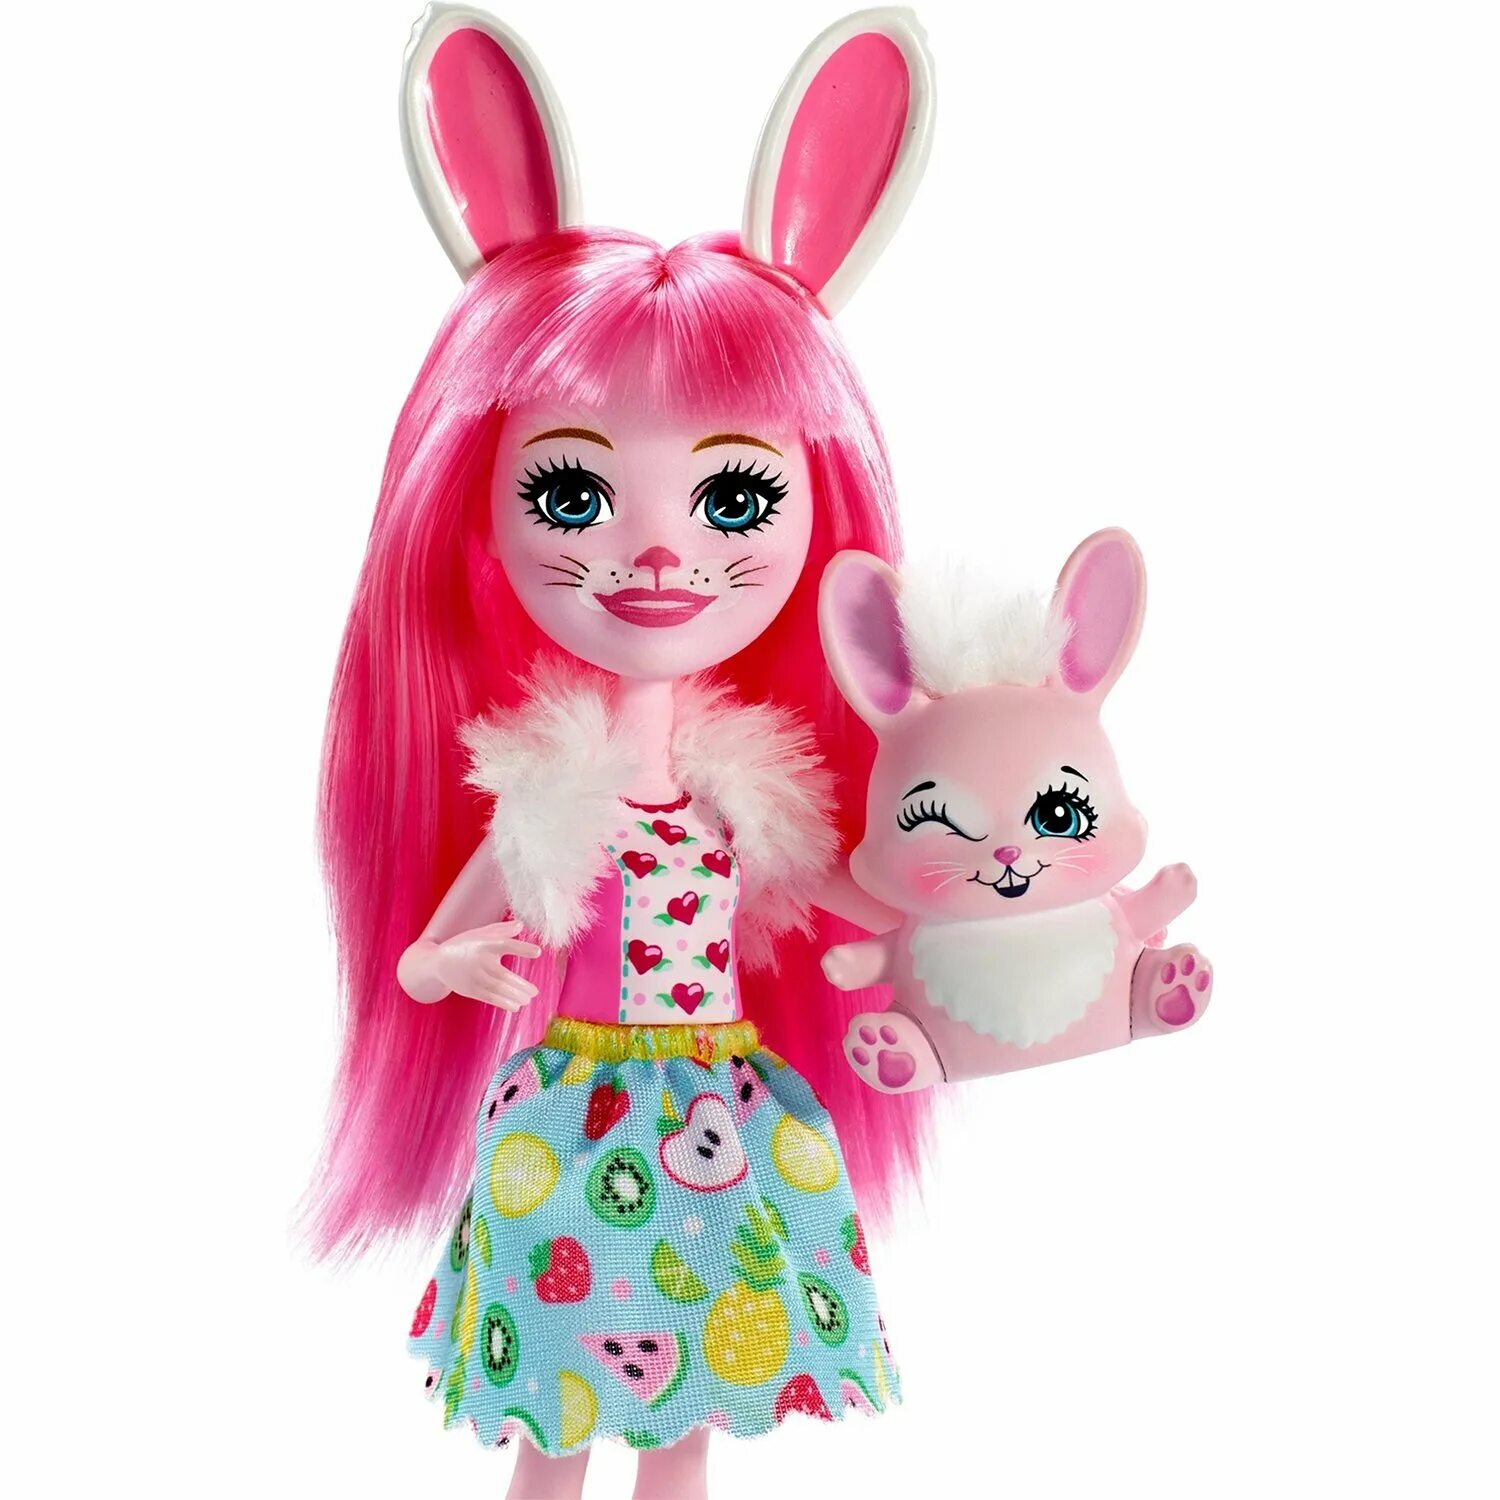 Кукла Enchantimals Бри кроля с любимой зверюшкой, 15 см, fxm73. Кукла Энчантималс Бри кроля и Твист. Кукла Энчантималс Бри кроля. Энчантималс Бри Банни.